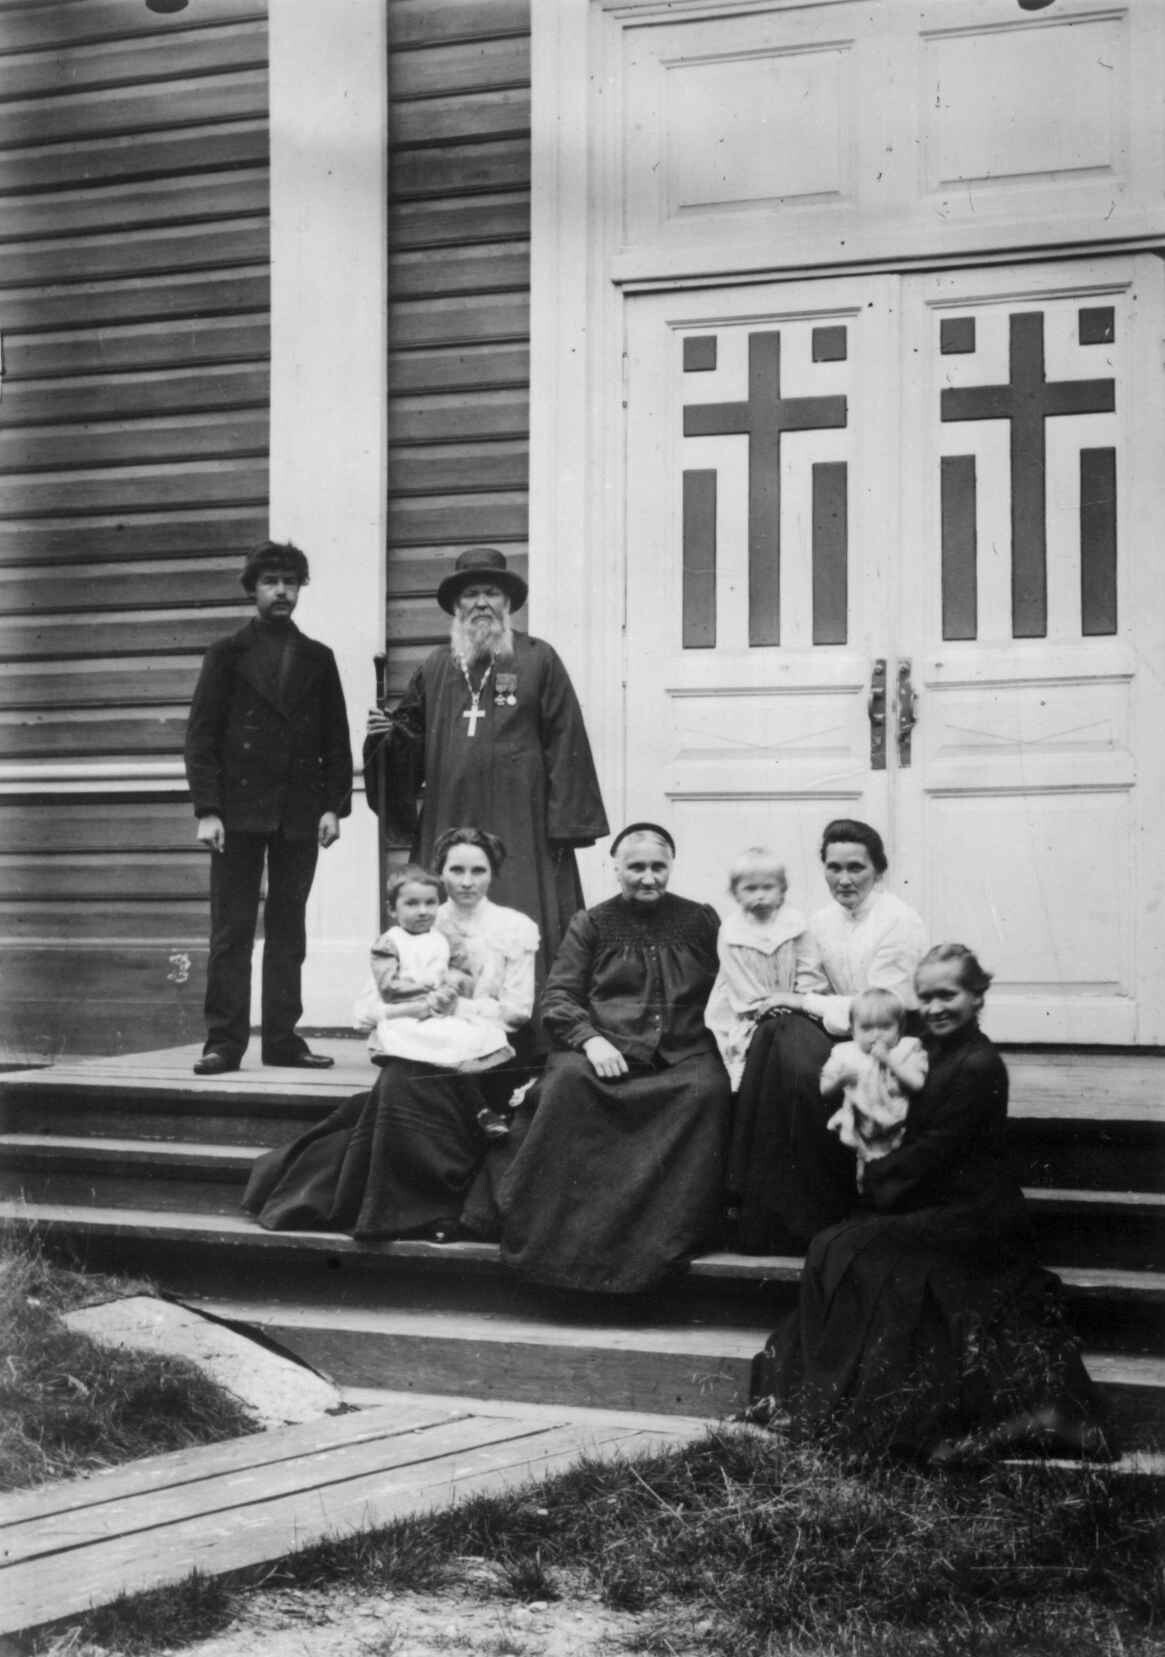 Щеколдин с семьёй, Россия, 1903. Фотограф Эллизиф Ранвейг Вессель